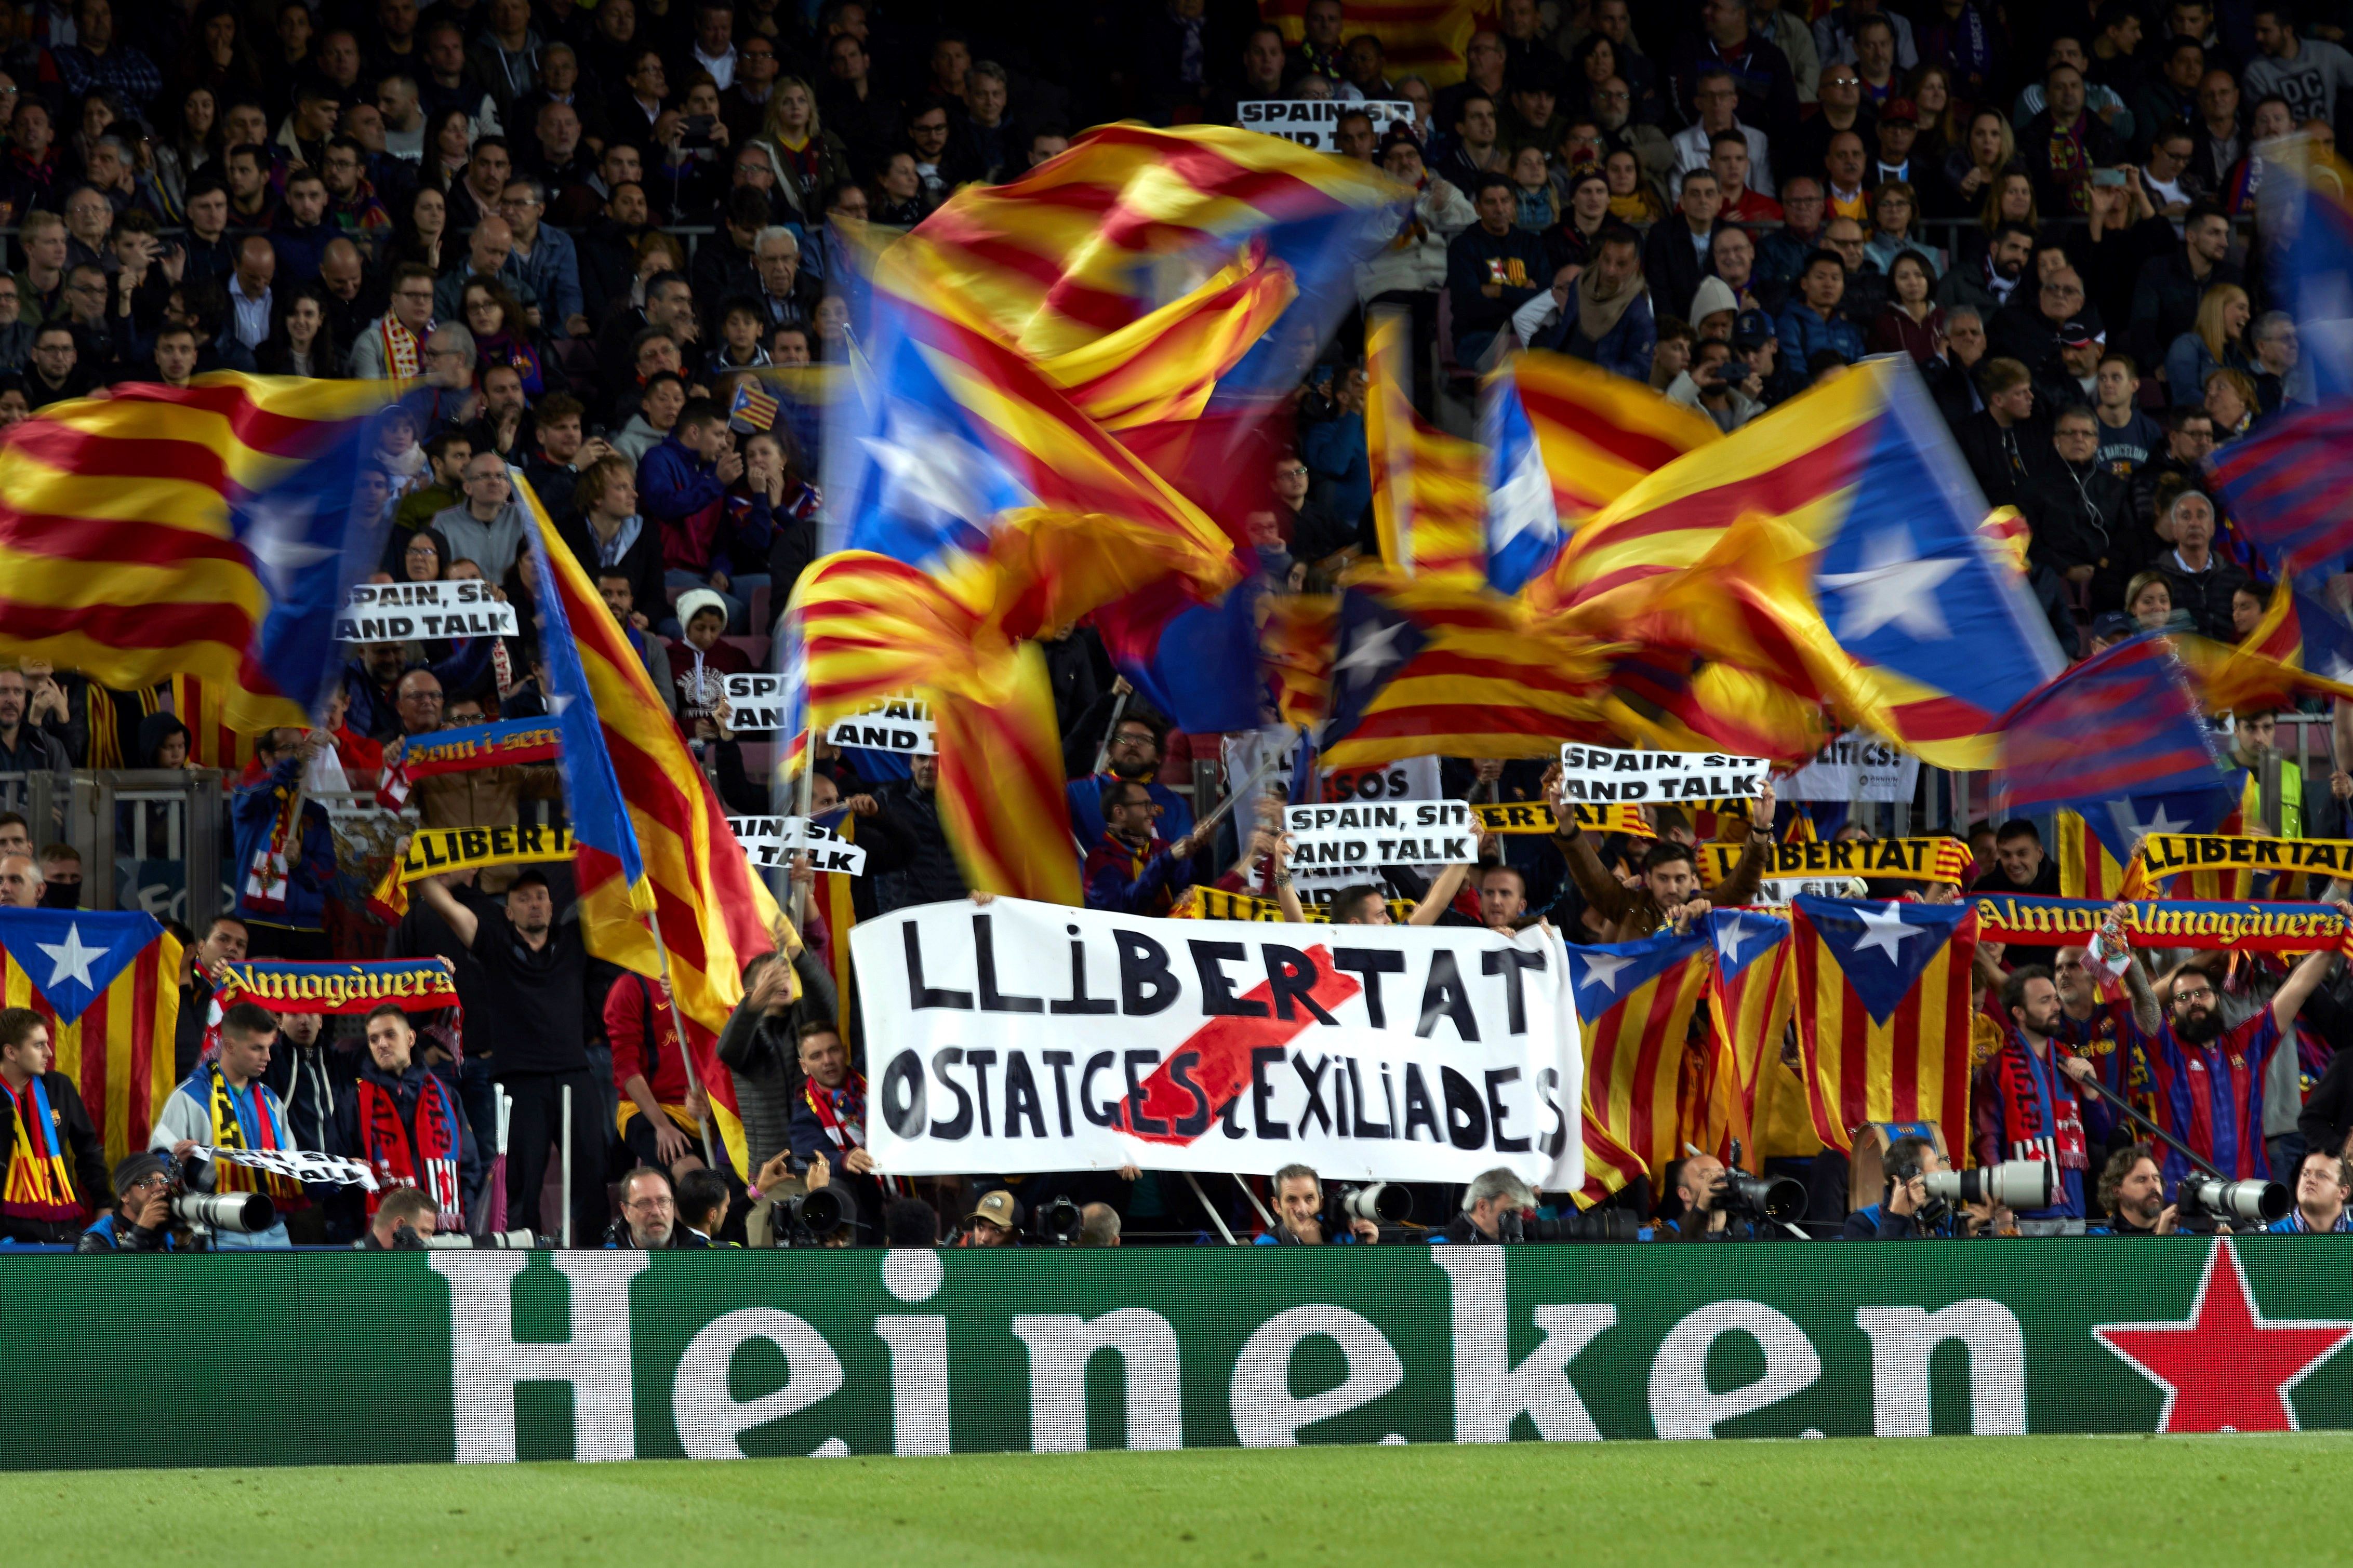 El Barça assegura que no ha tingut "cap comunicació amb Tsunami Democràtic"